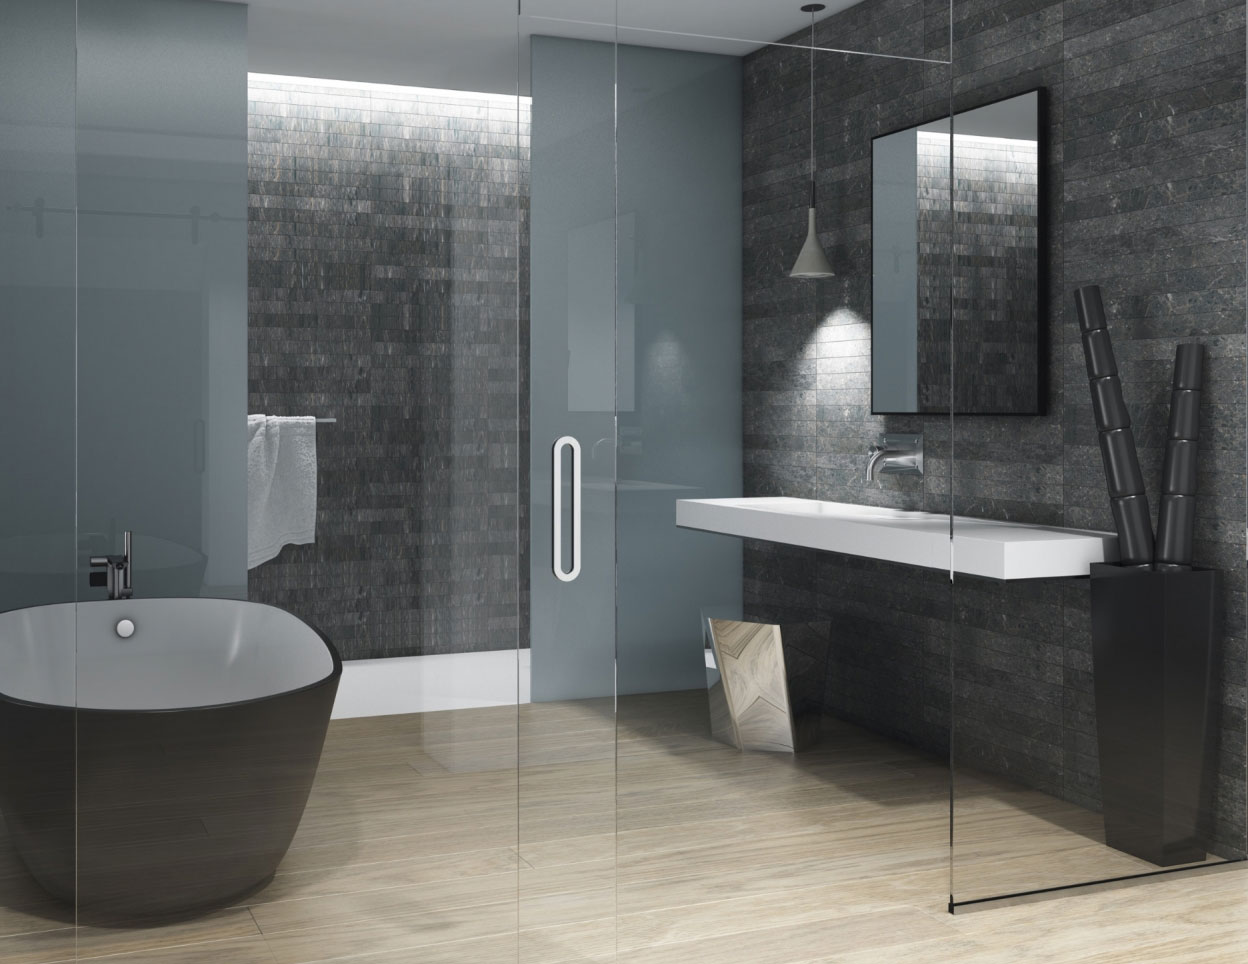 Une salle de bain moderne avec des carreaux sombres élégants, une baignoire autoportante, une cabine de douche en verre et une vanité minimaliste avec un grand miroir et un ameublement professionnel sur mesure.